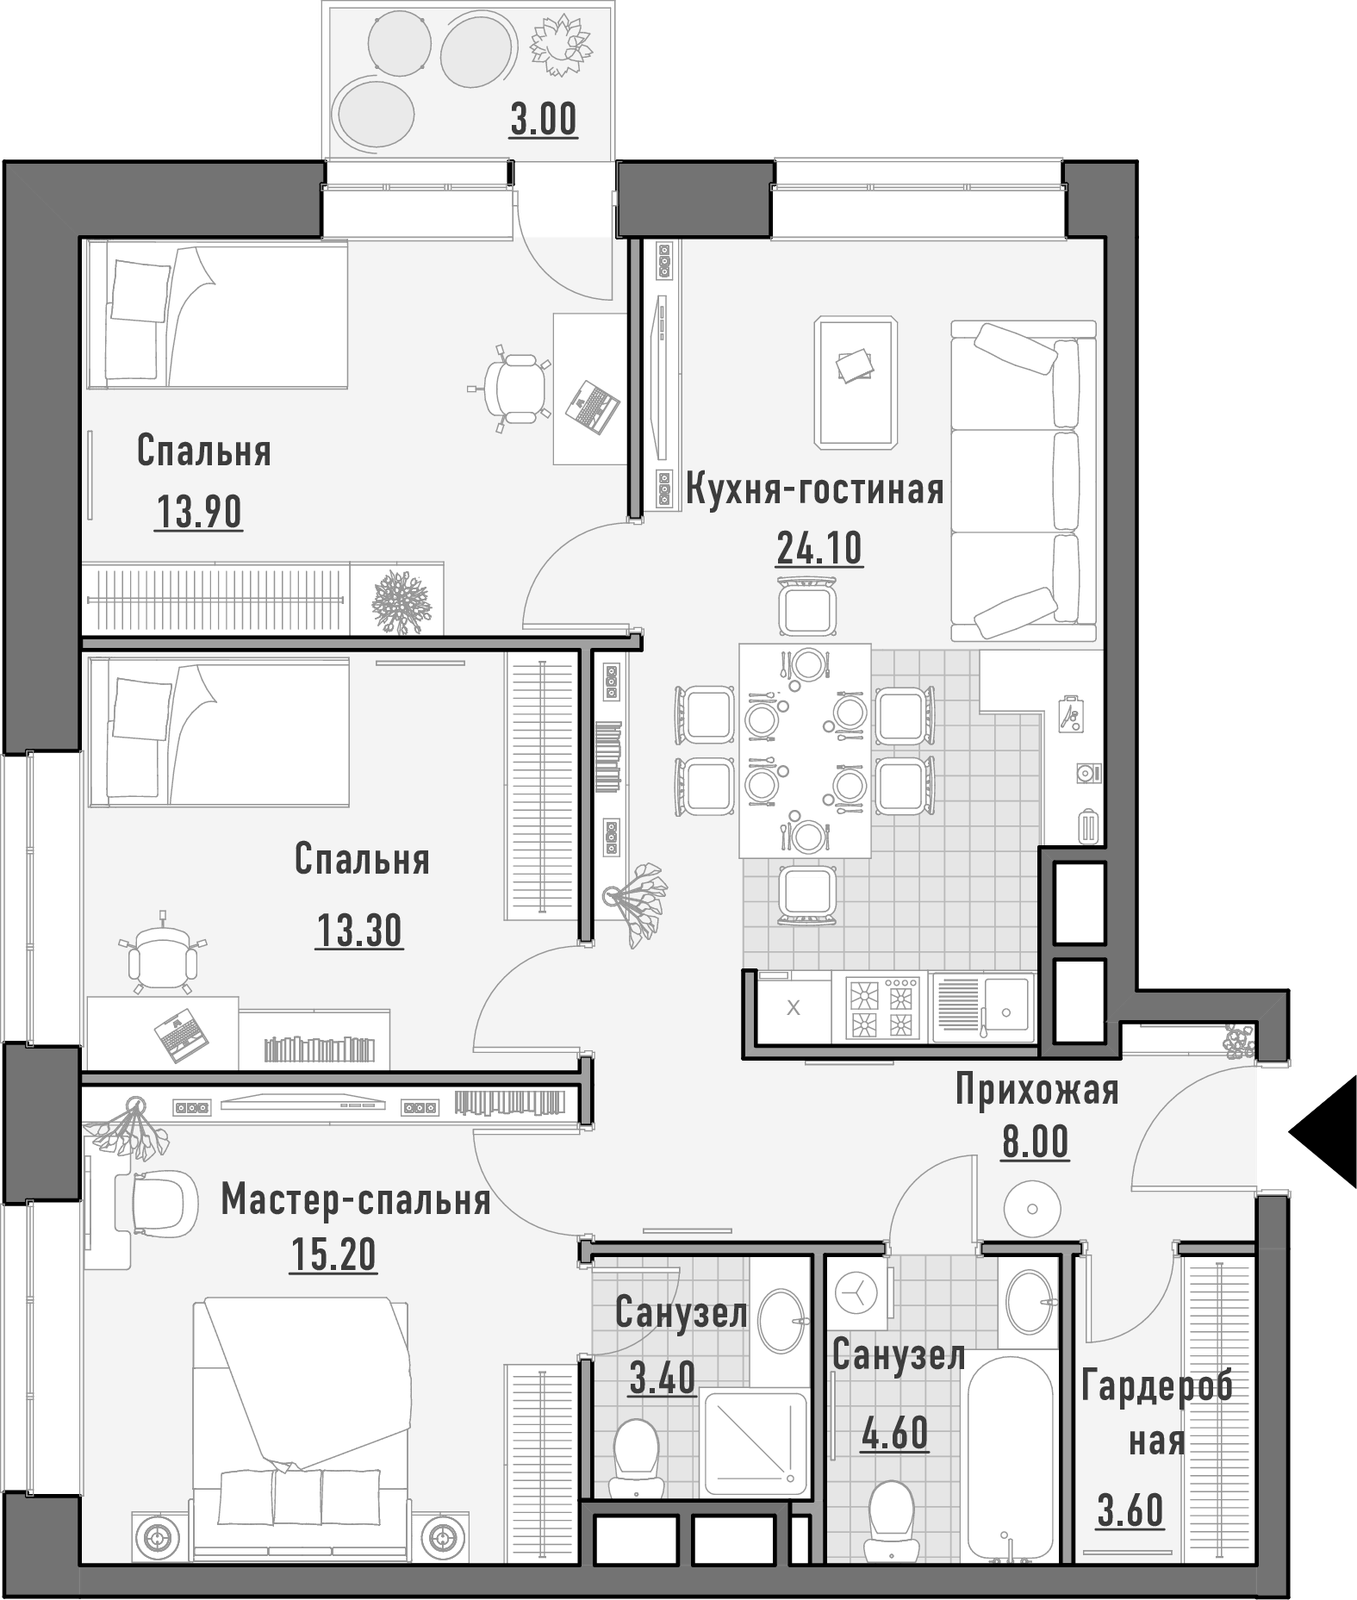 Продаётся 3-комнатная квартира в новостройке 86.1 кв.м. этаж 7/14 за 29 830 000 руб 